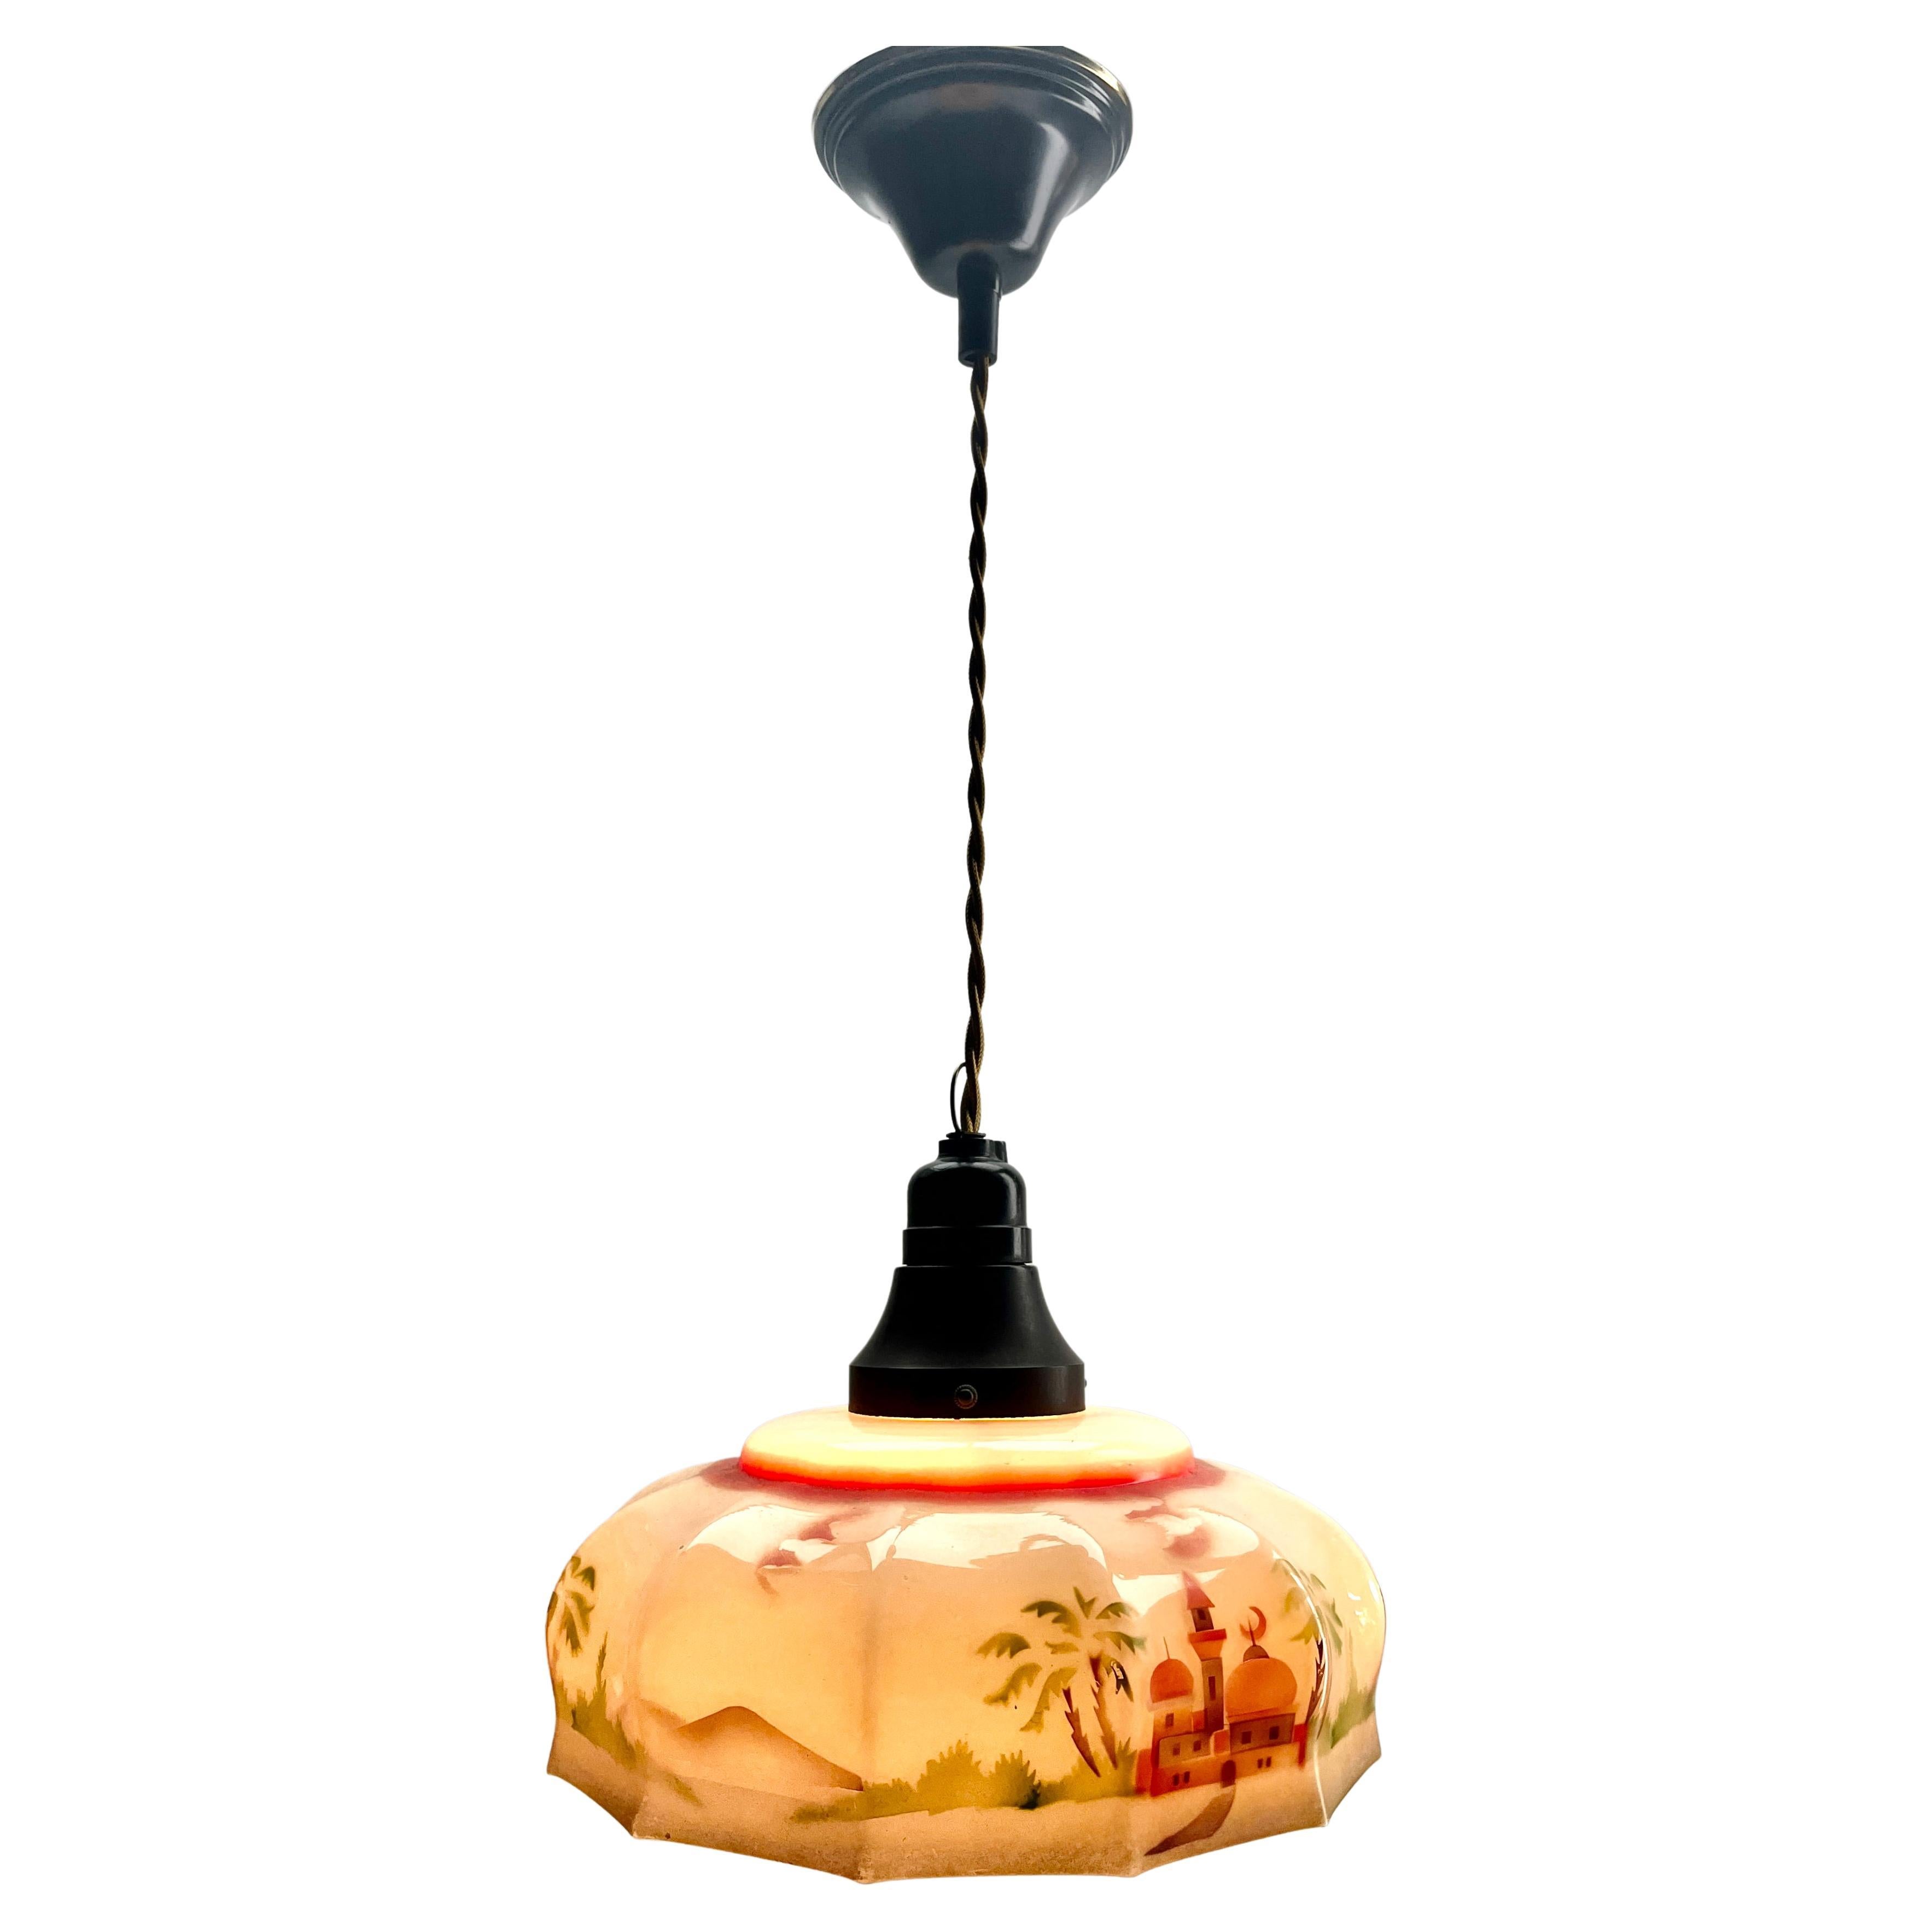 Art Deco Ceiling Lamp Bakelite fitting E27 Scailmont Belgium Glass Shade, 1930s For Sale